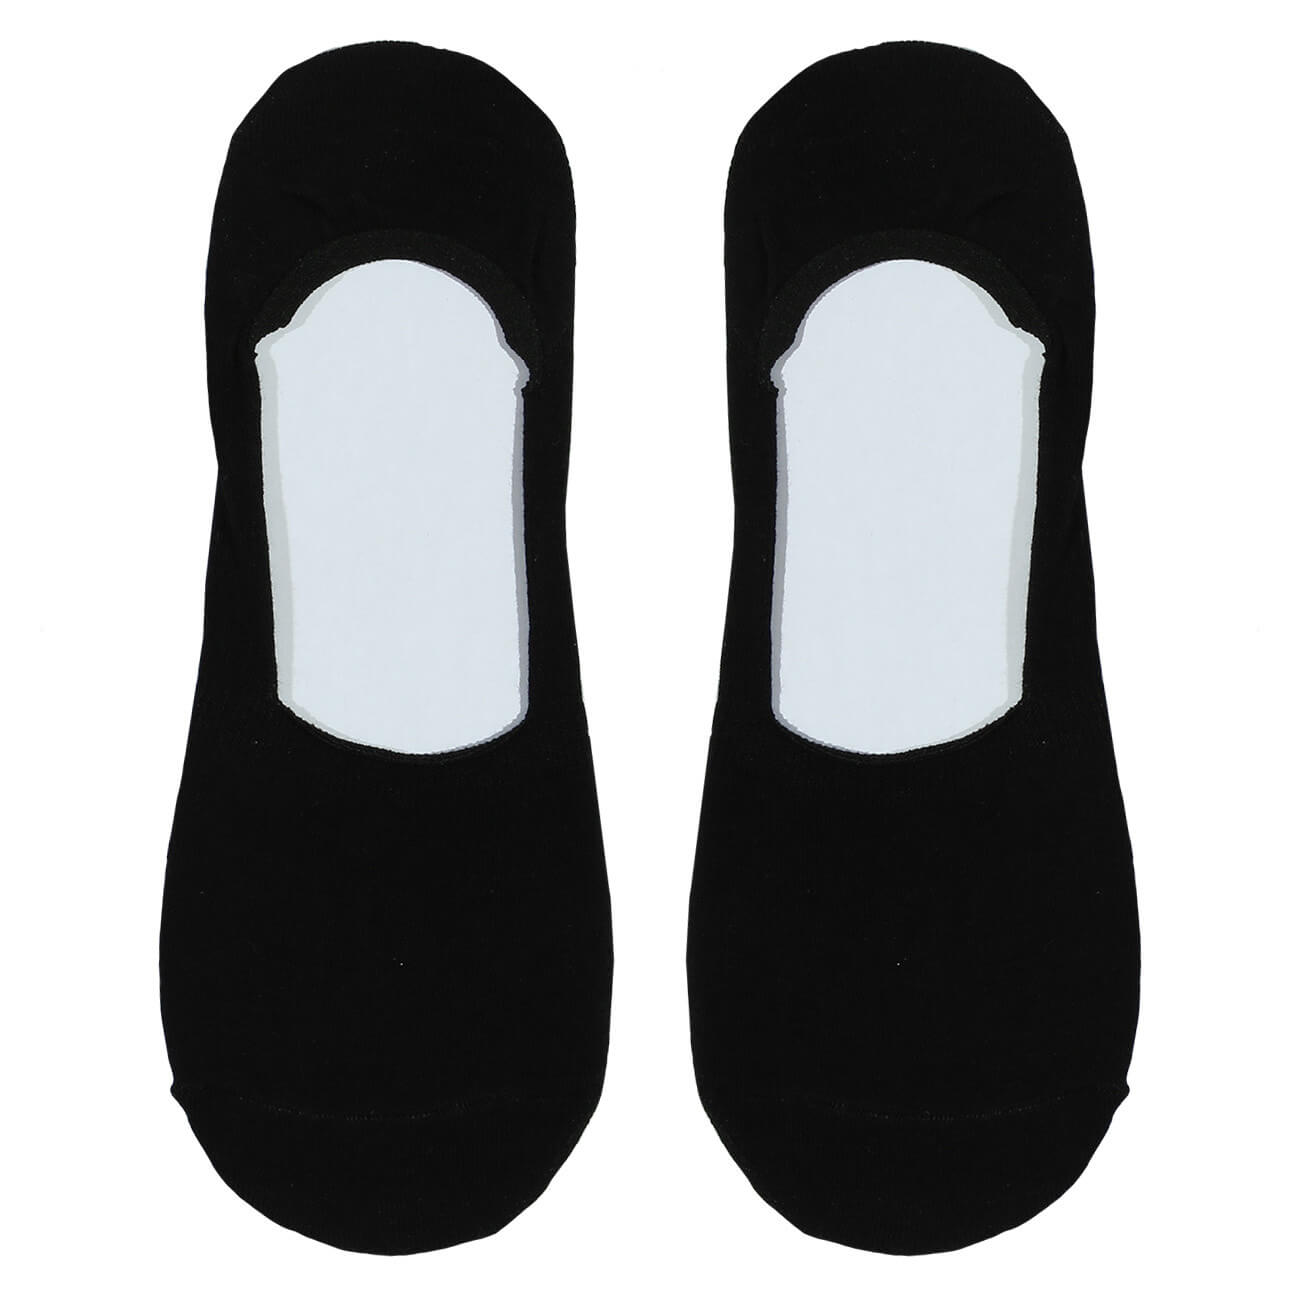 Women's track socks, SizeSize 36-38, cotton / polyester, black, Basic изображение № 1